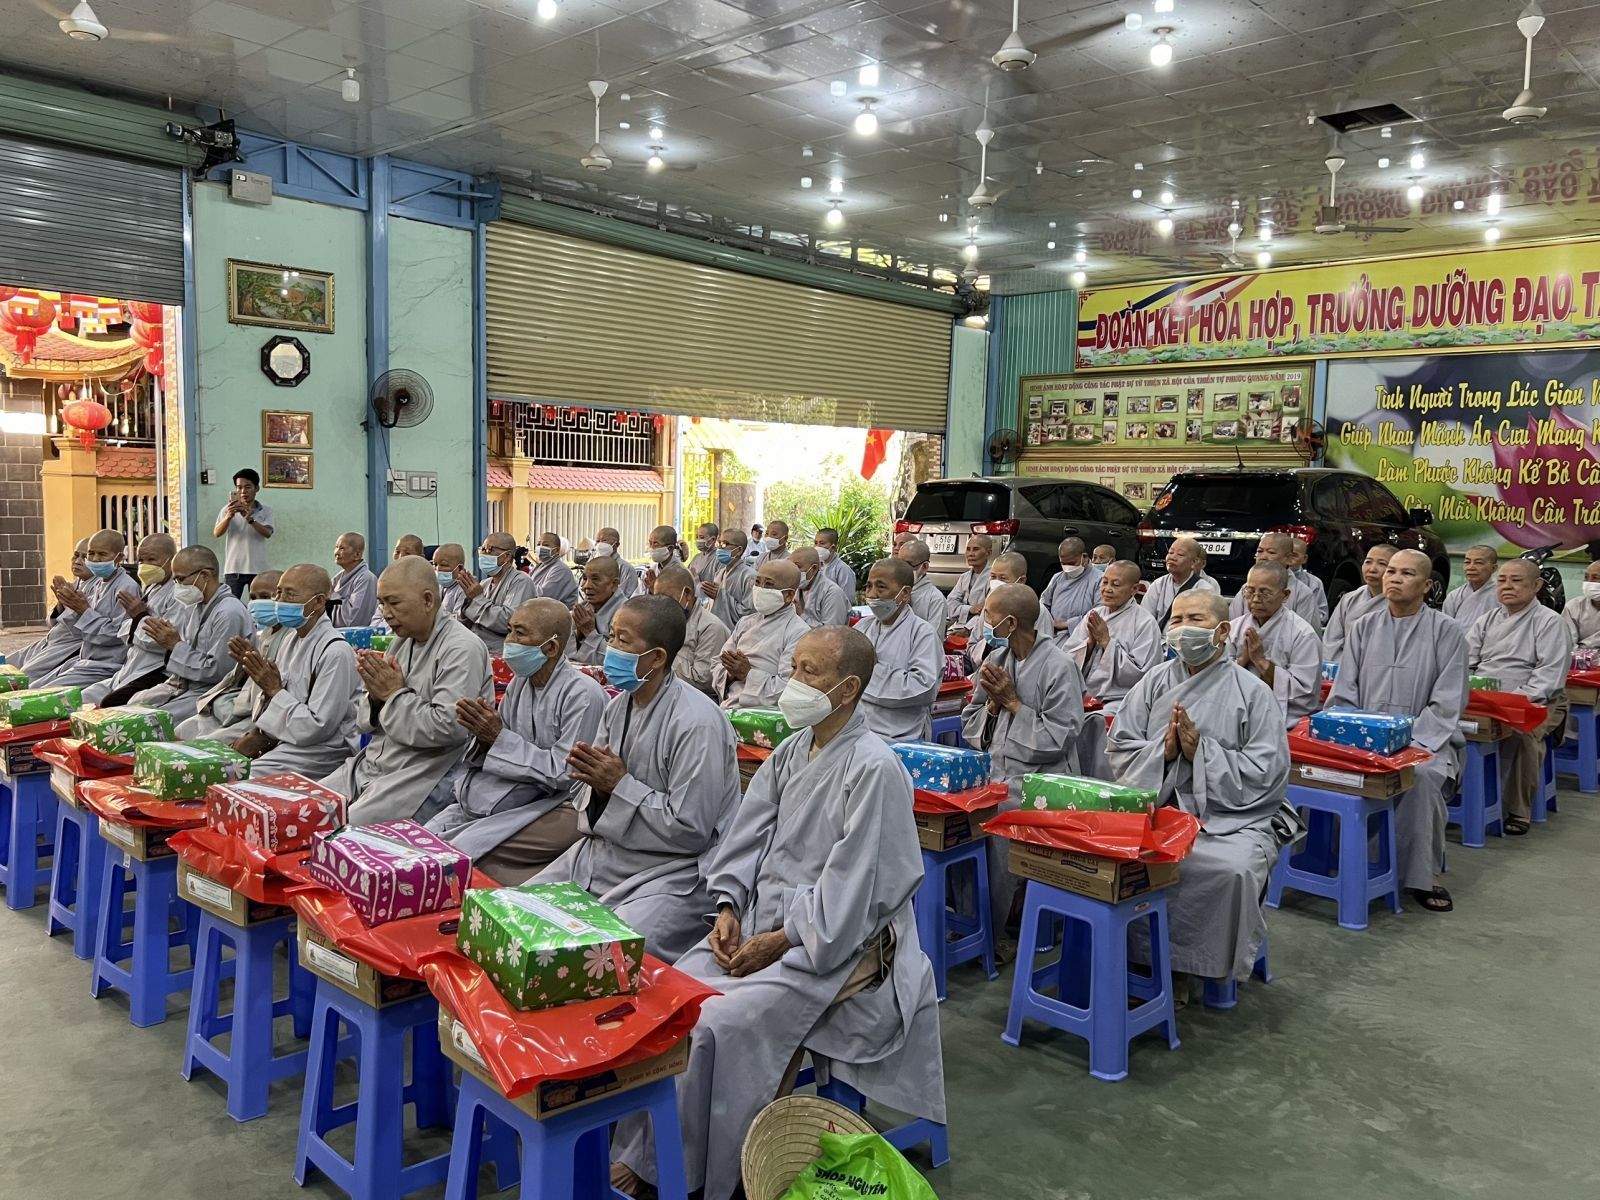 Long Thành: Thiền tự Phước Quang cúng dường 100 phần quà cho chư tôn đức Ni khu ngoại viện Thường Chiếu